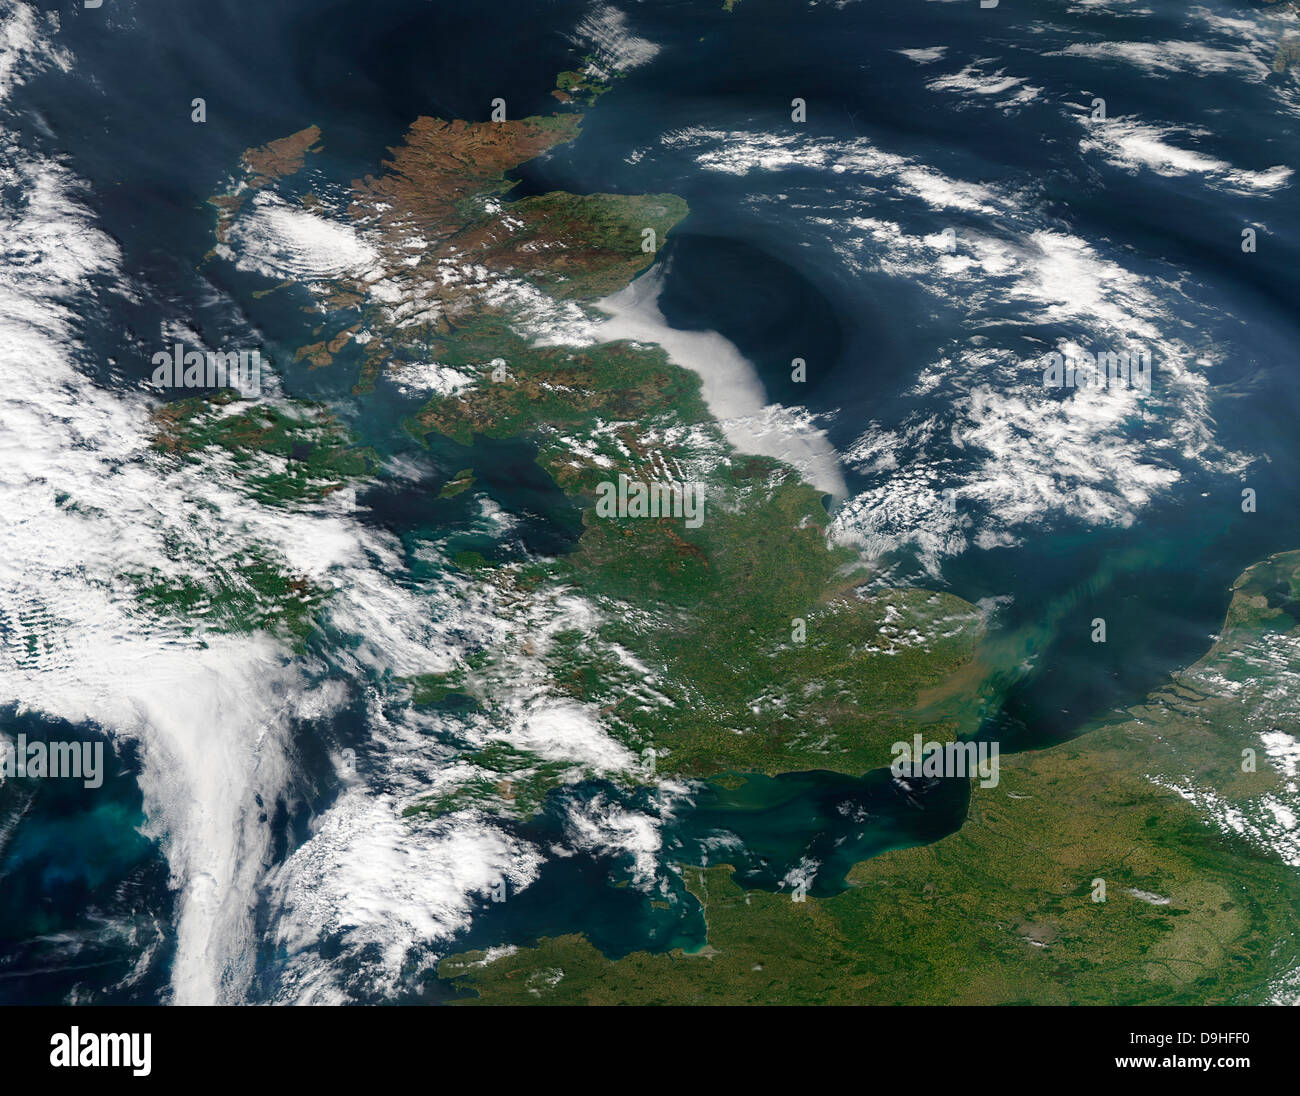 22 avril 2011 - image satellite du smog sur le Royaume-Uni. Banque D'Images